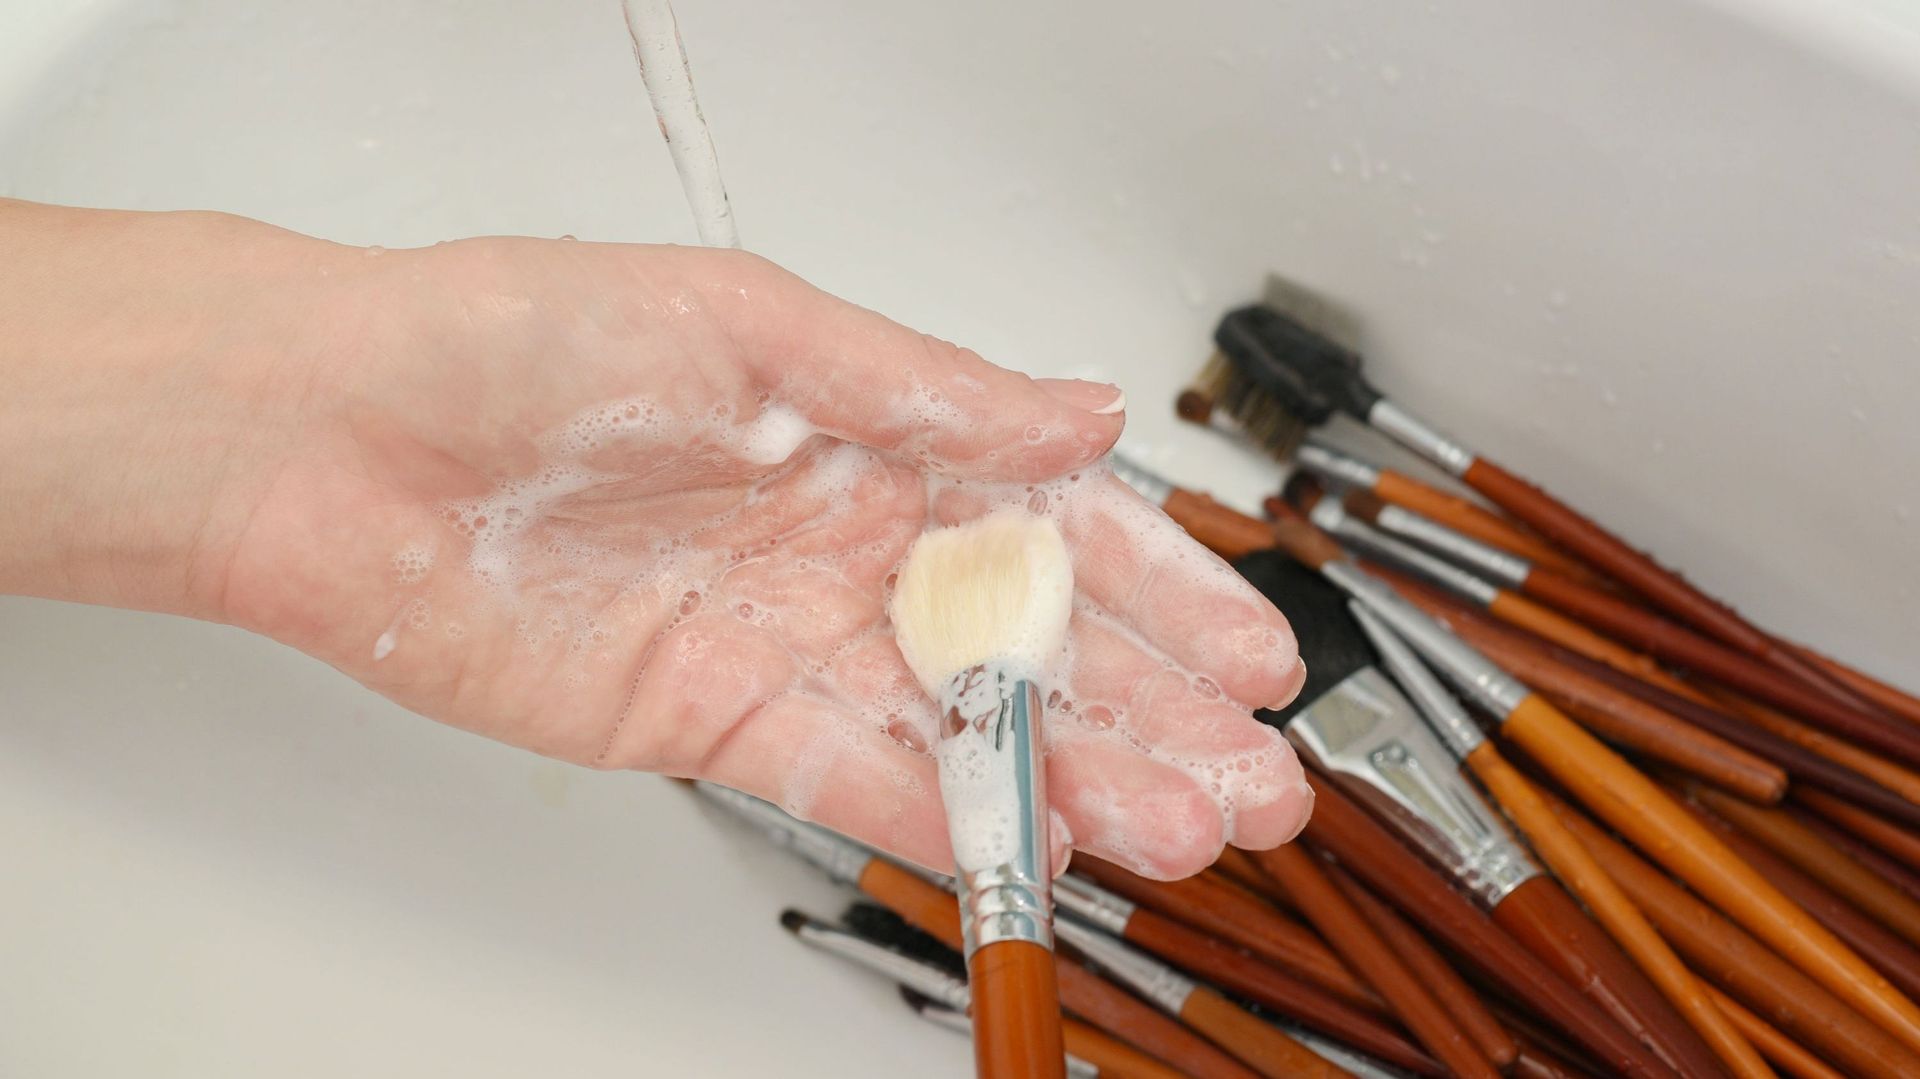 Lavage de pinceaux au savon dans un évier